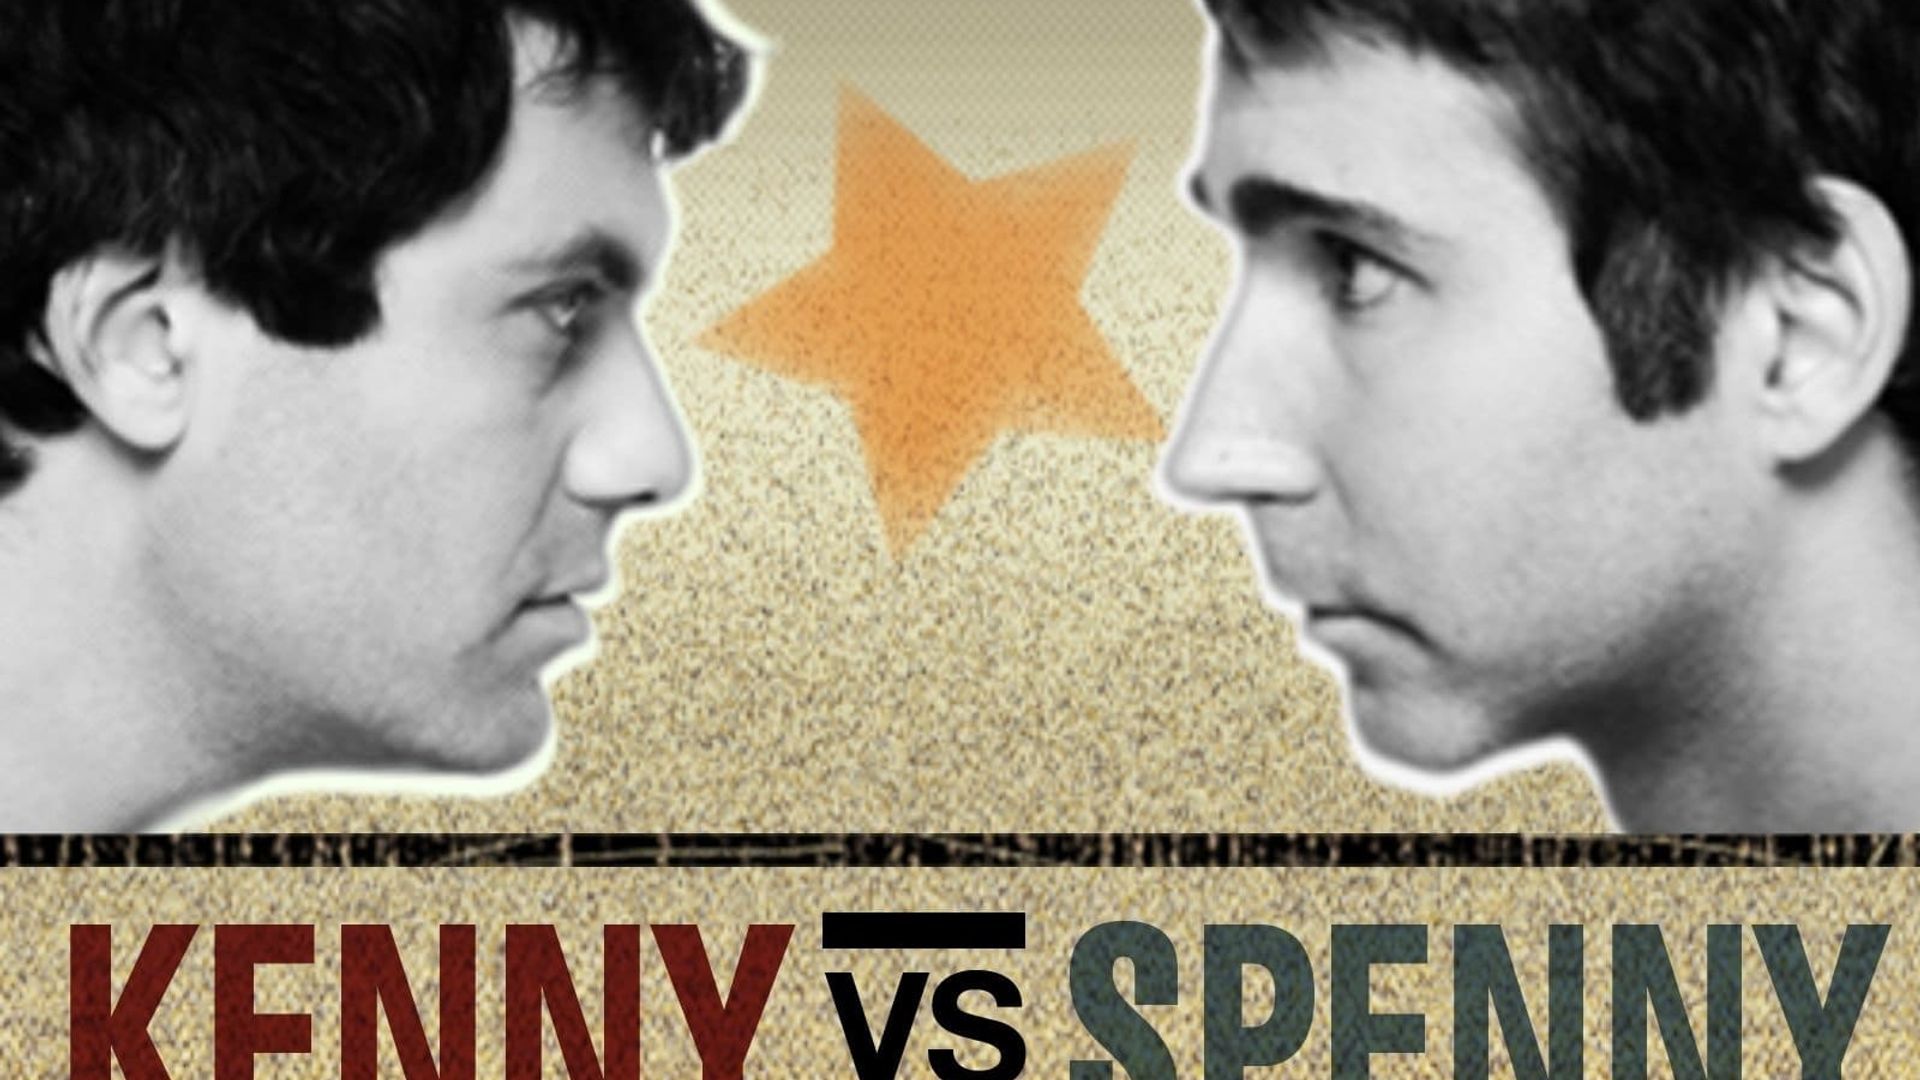 Kenny vs. Spenny background